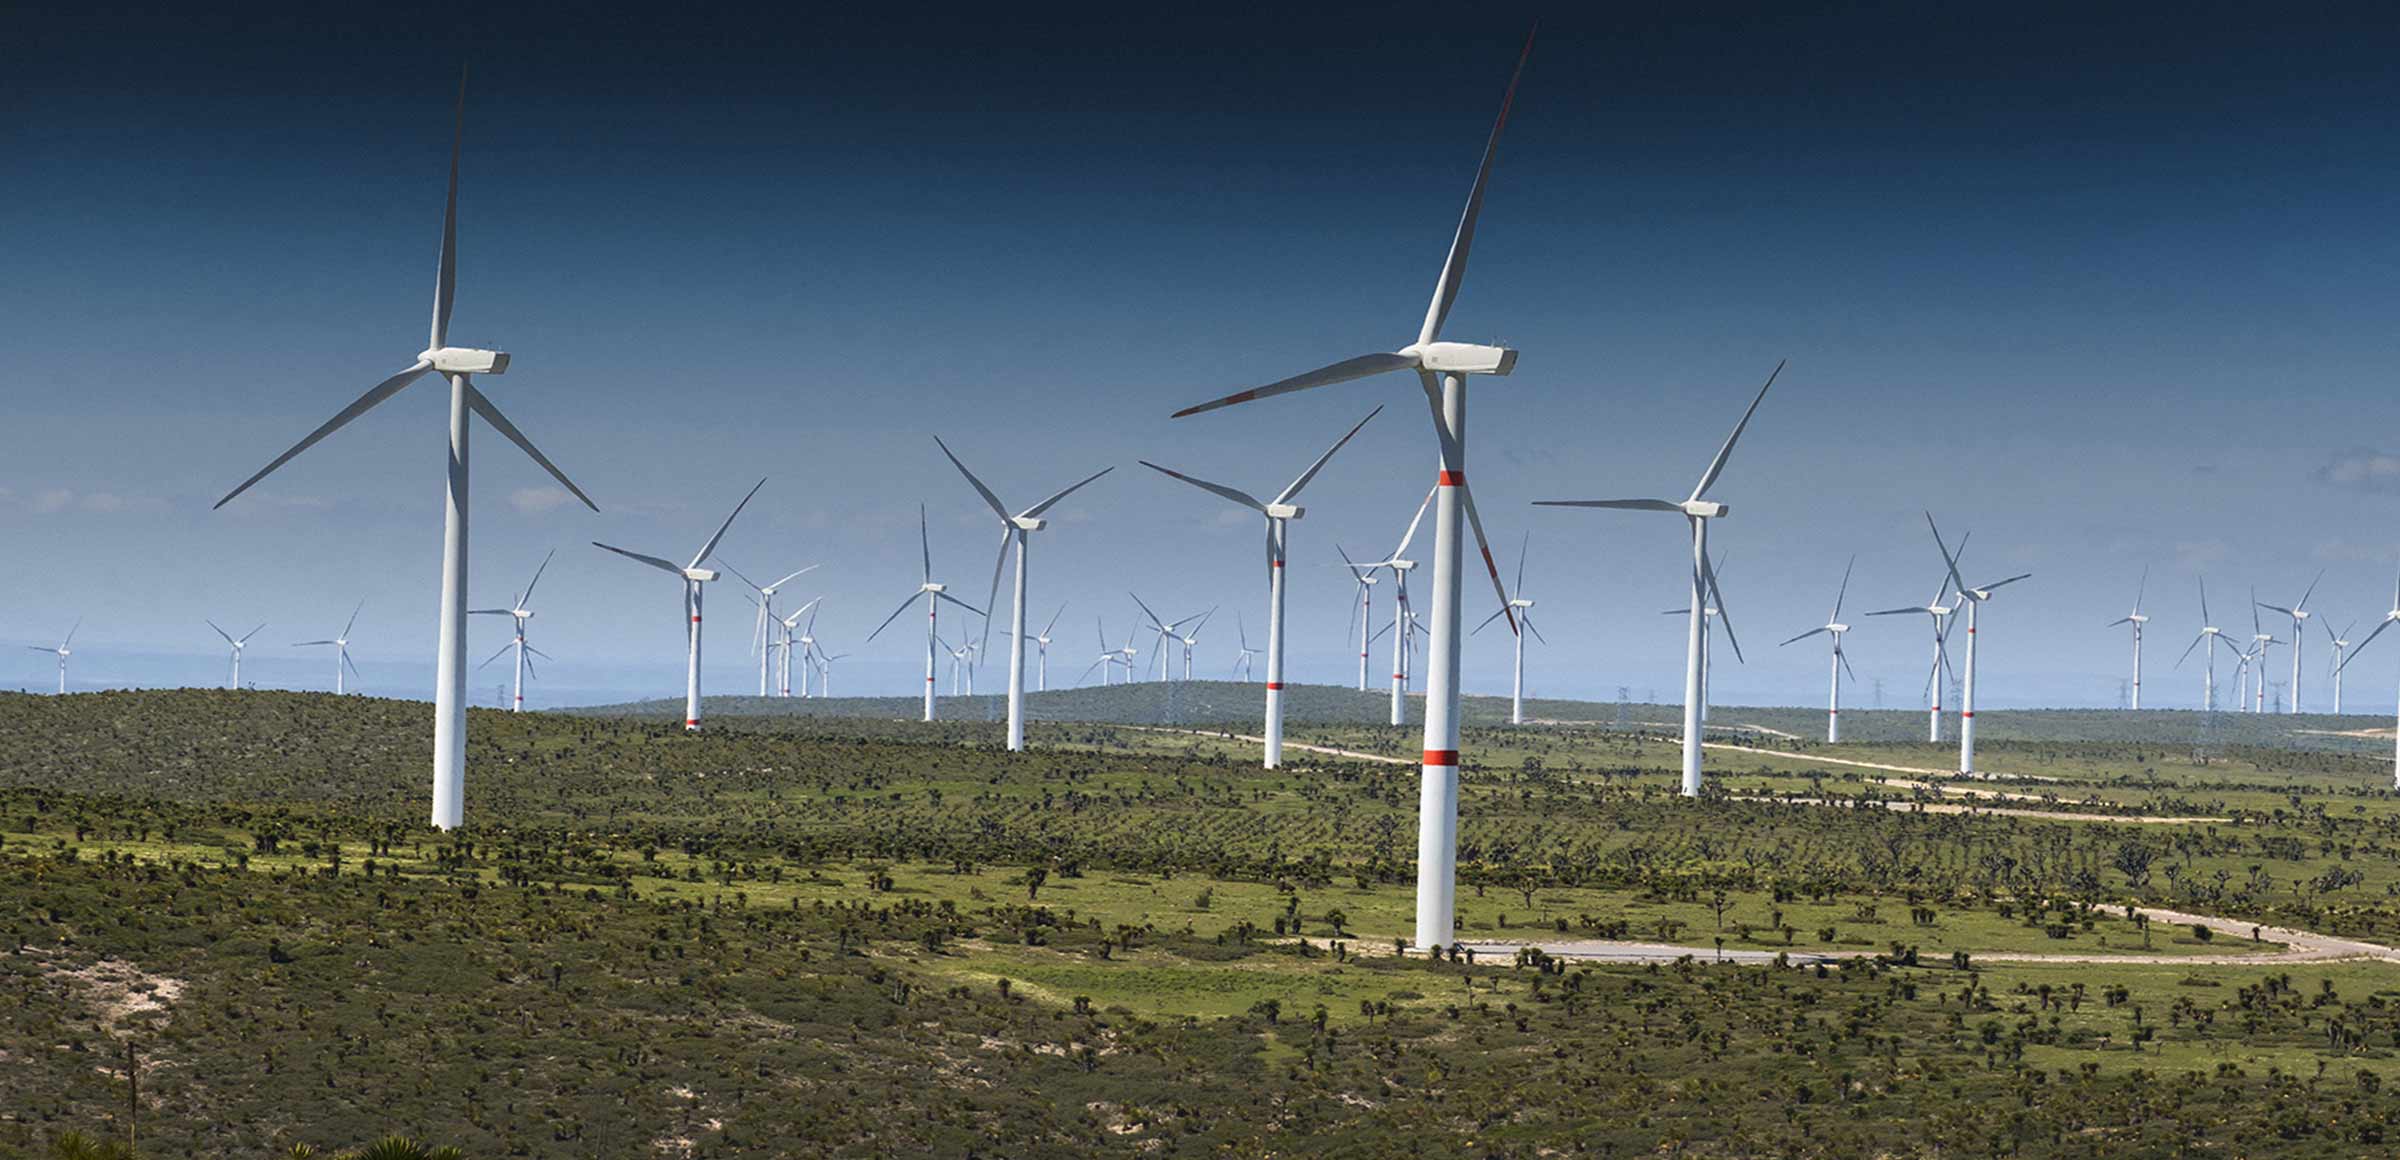 [L'analisi] Energia rinnovabile, il governo sblocca 13 parchi eolici